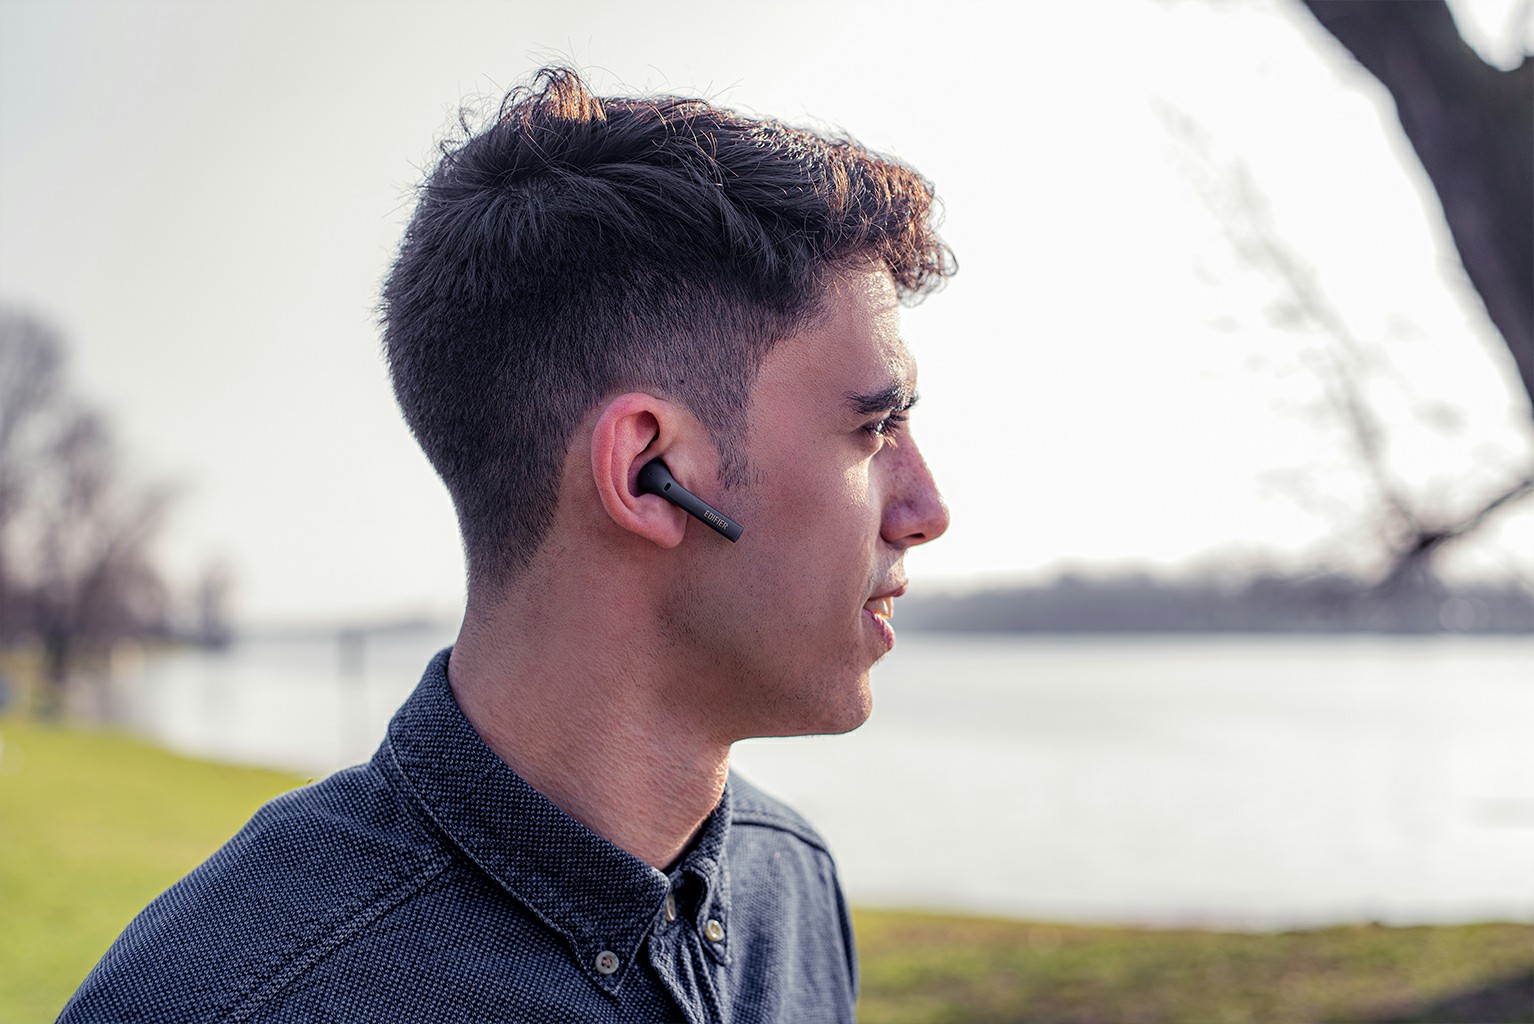 tws earbuds wireless